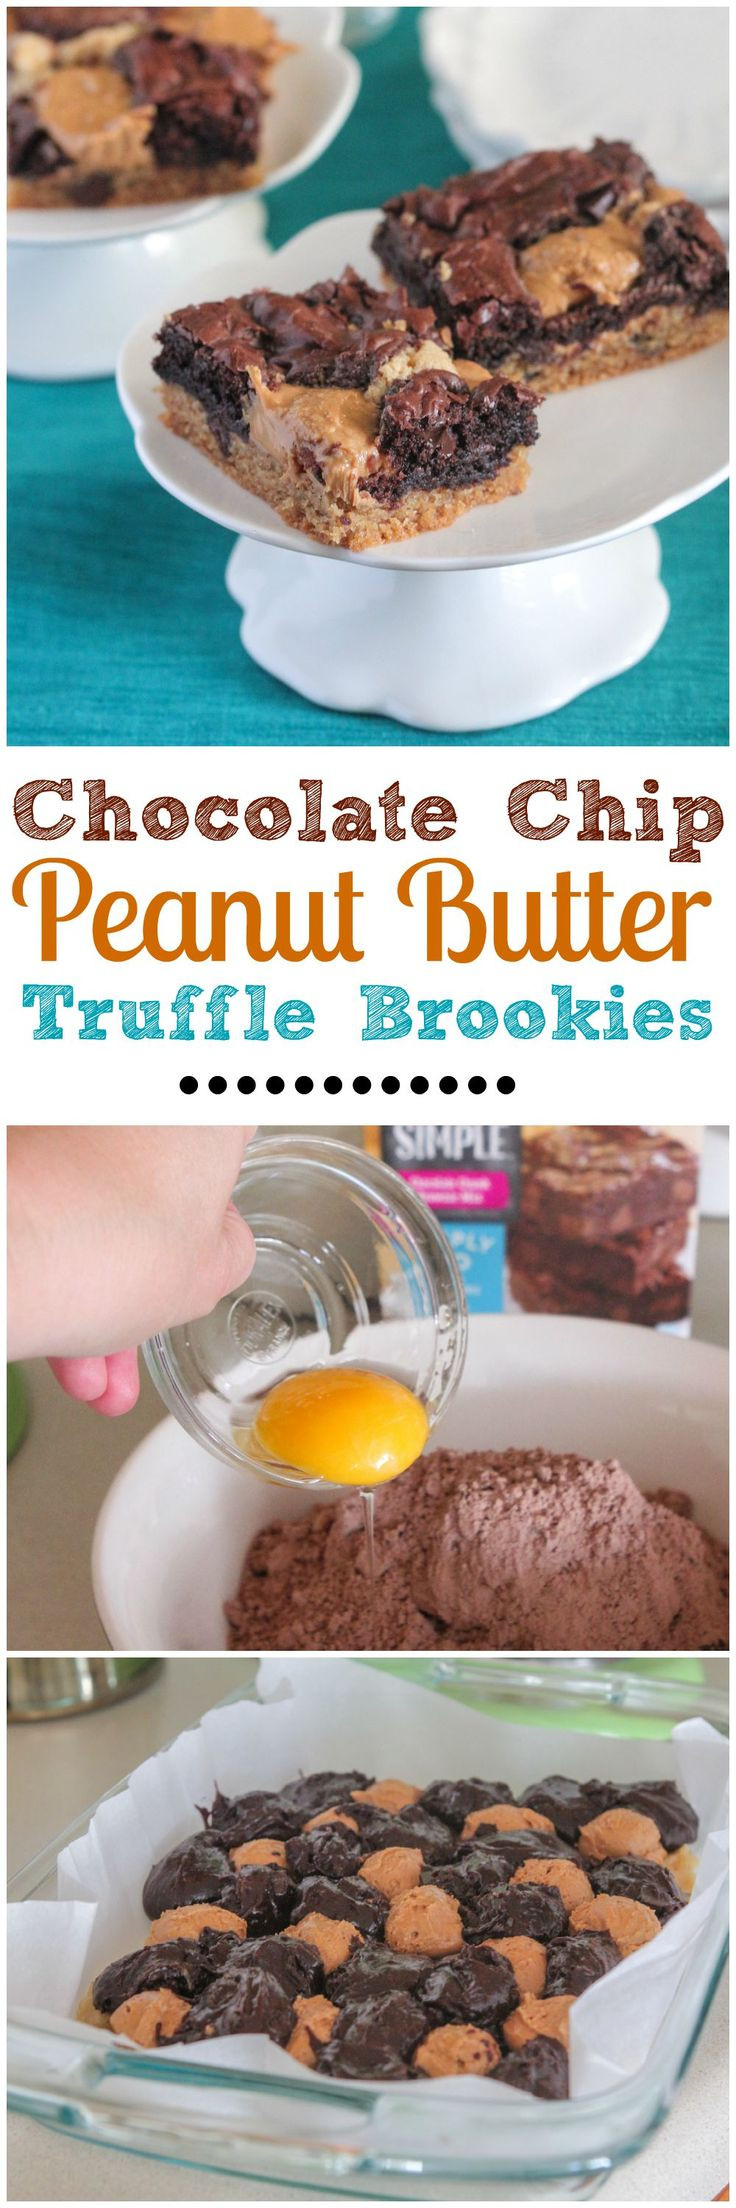 Best Peanut Butter Dessert
 best Best PEANUT BUTTER Recipes images on Pinterest